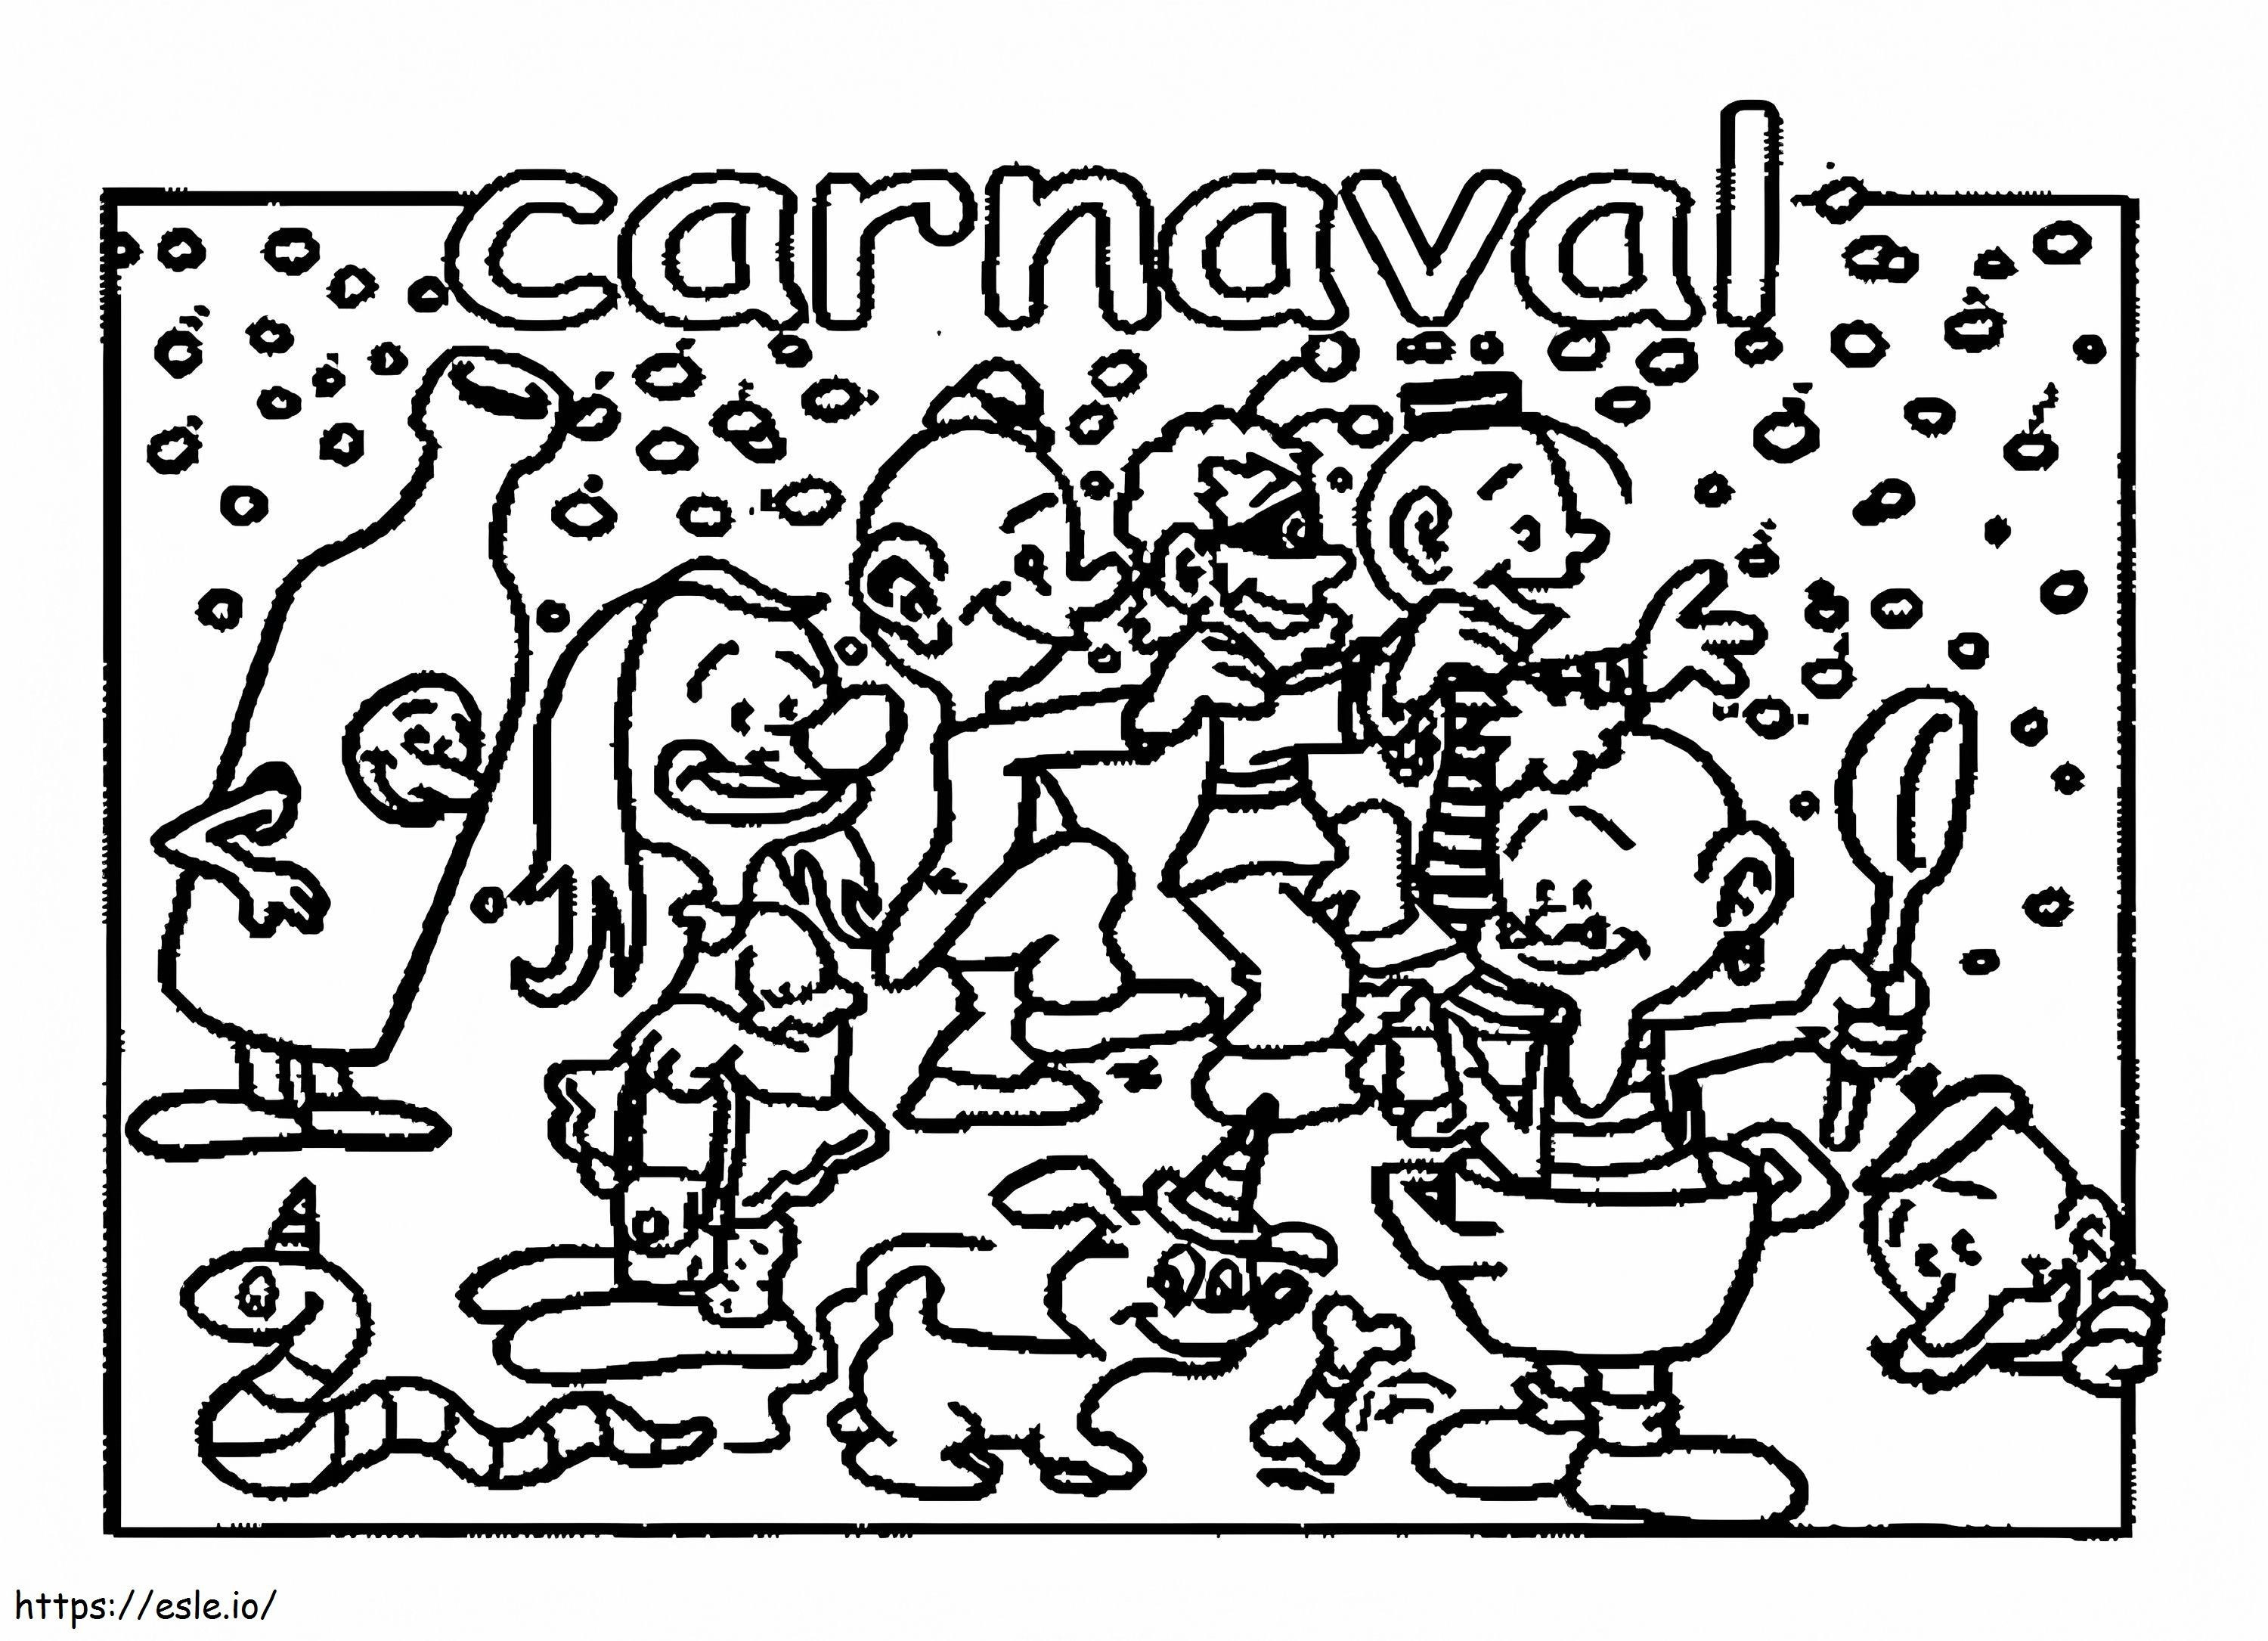 Carnaval 3 para colorear